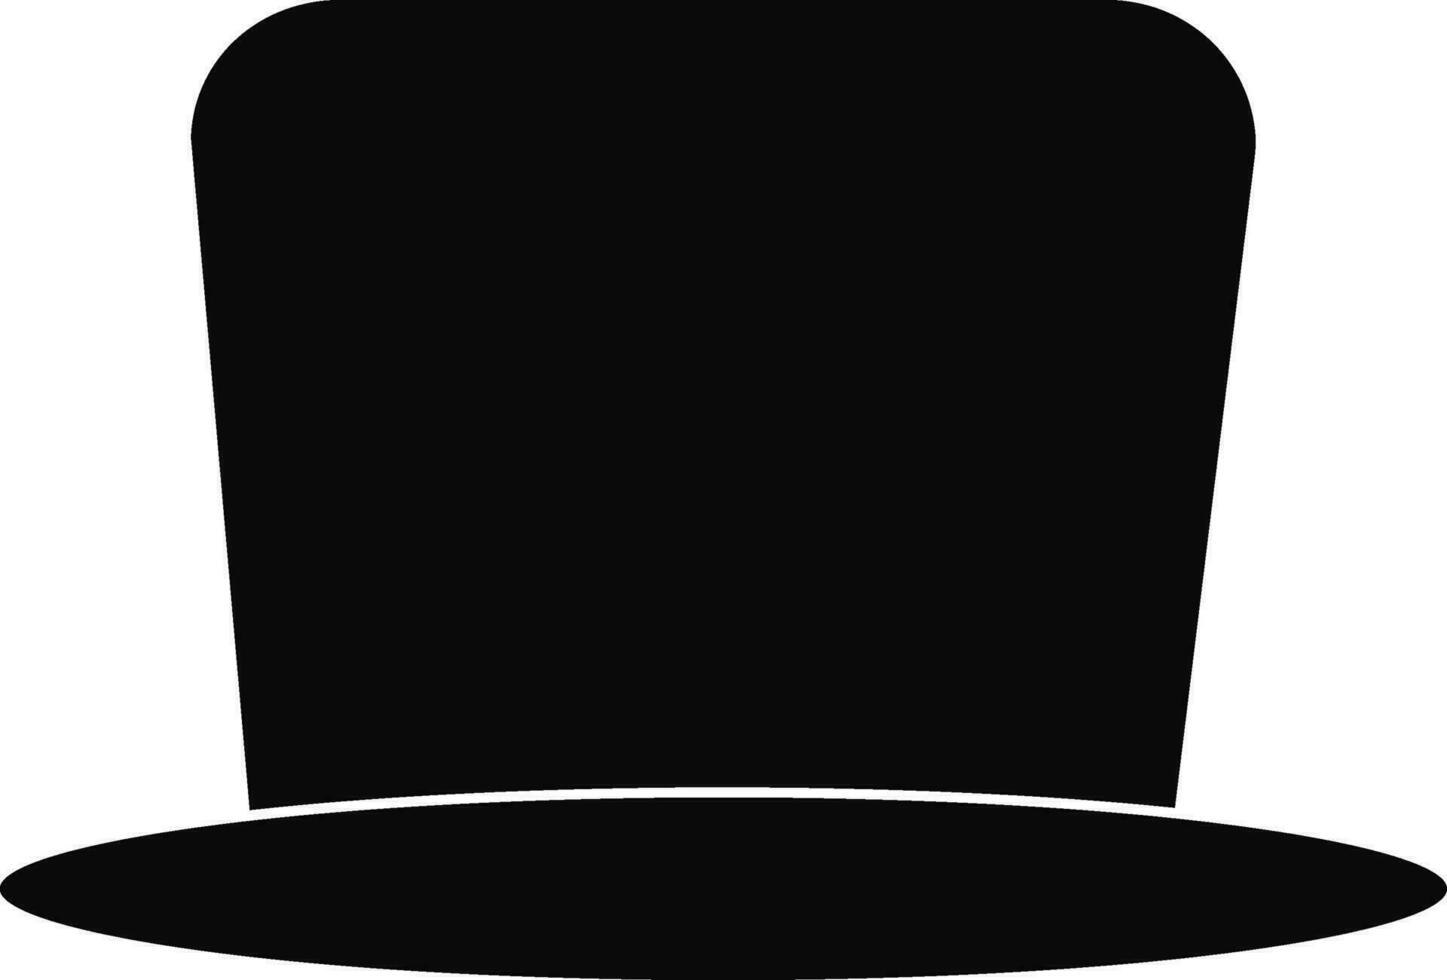 Pamela hat in black color. vector